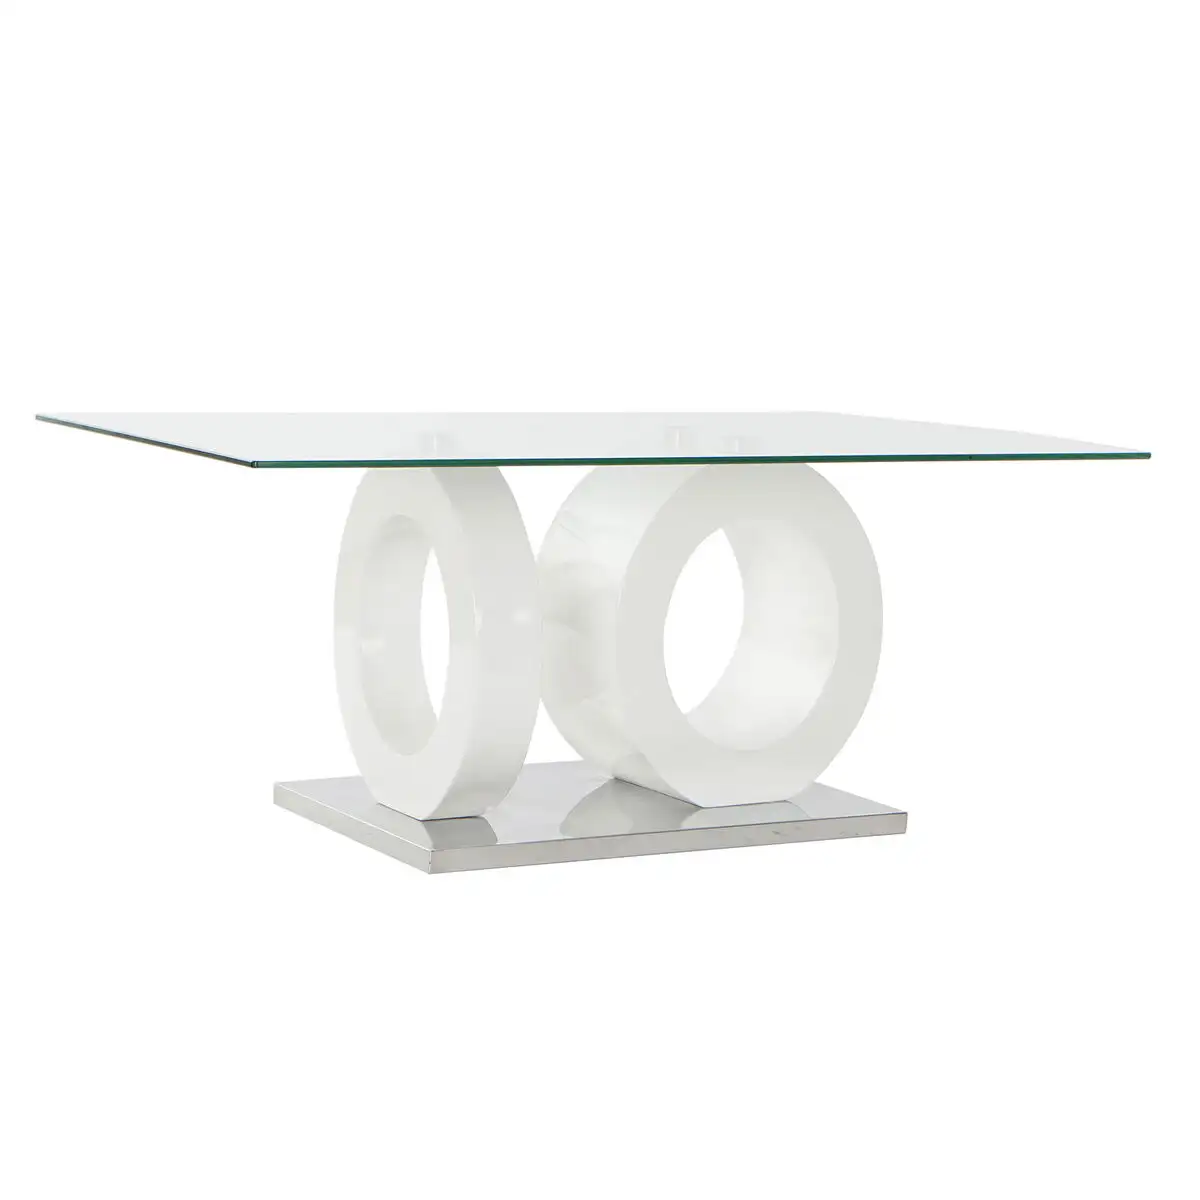 Table dkd home decor cristal blanc transparent bois mdf 110 x 60 x 45 cm_5003. Bienvenue chez DIAYTAR SENEGAL - Où Chaque Détail Fait la Différence. Découvrez notre sélection méticuleuse et choisissez des articles qui répondent à vos exigences.